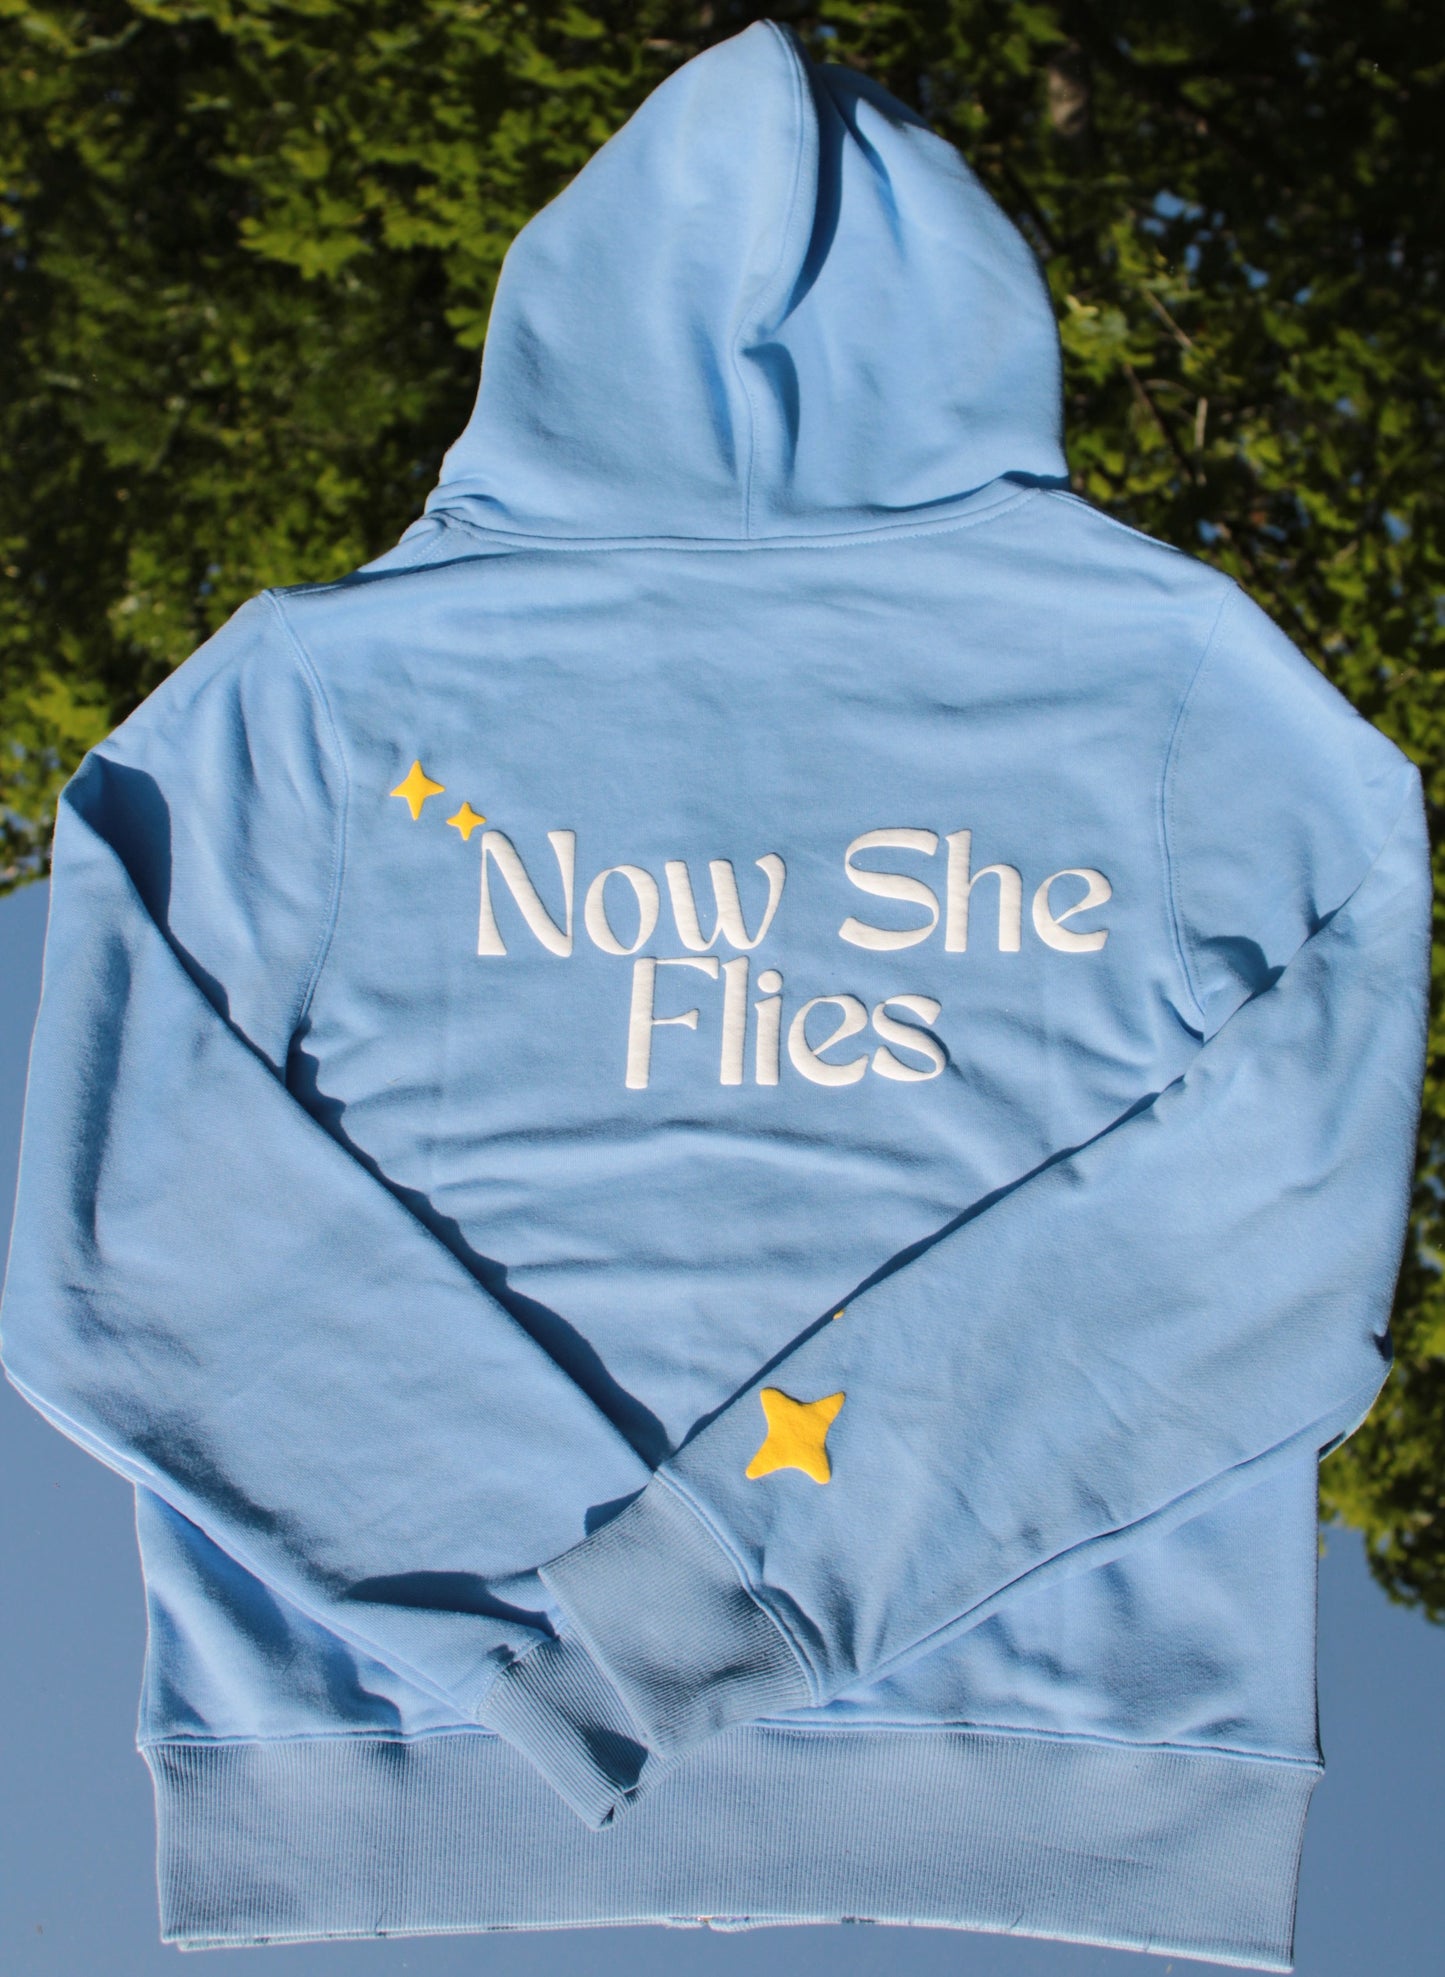 NSF Oversized Zip Up Hoodie in Chrysalis Blue